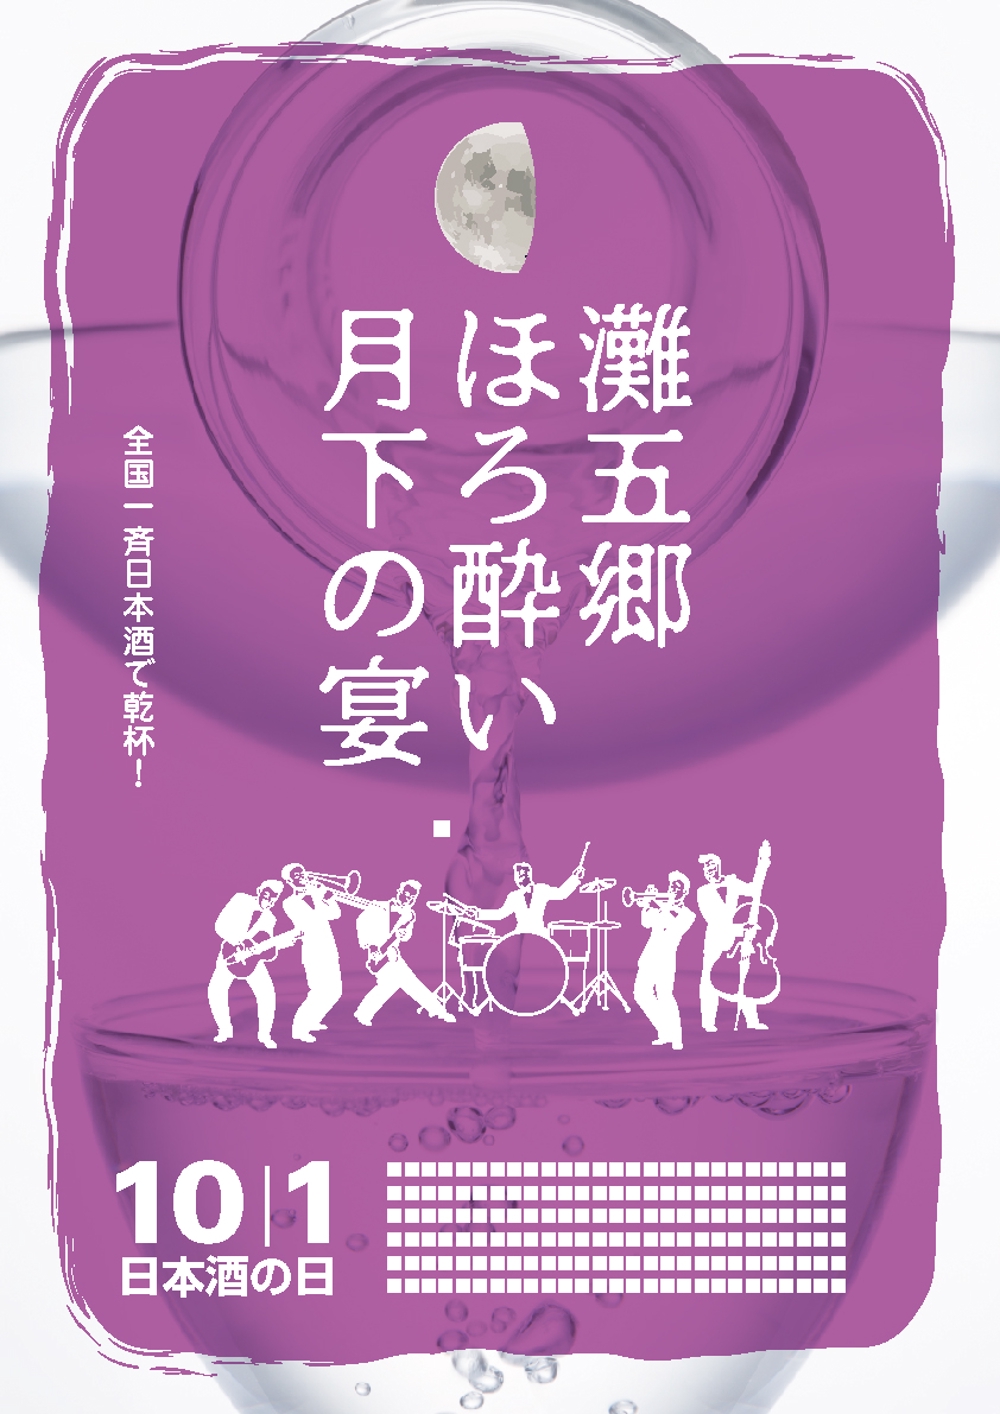 日本酒イベントのポスターデザイン